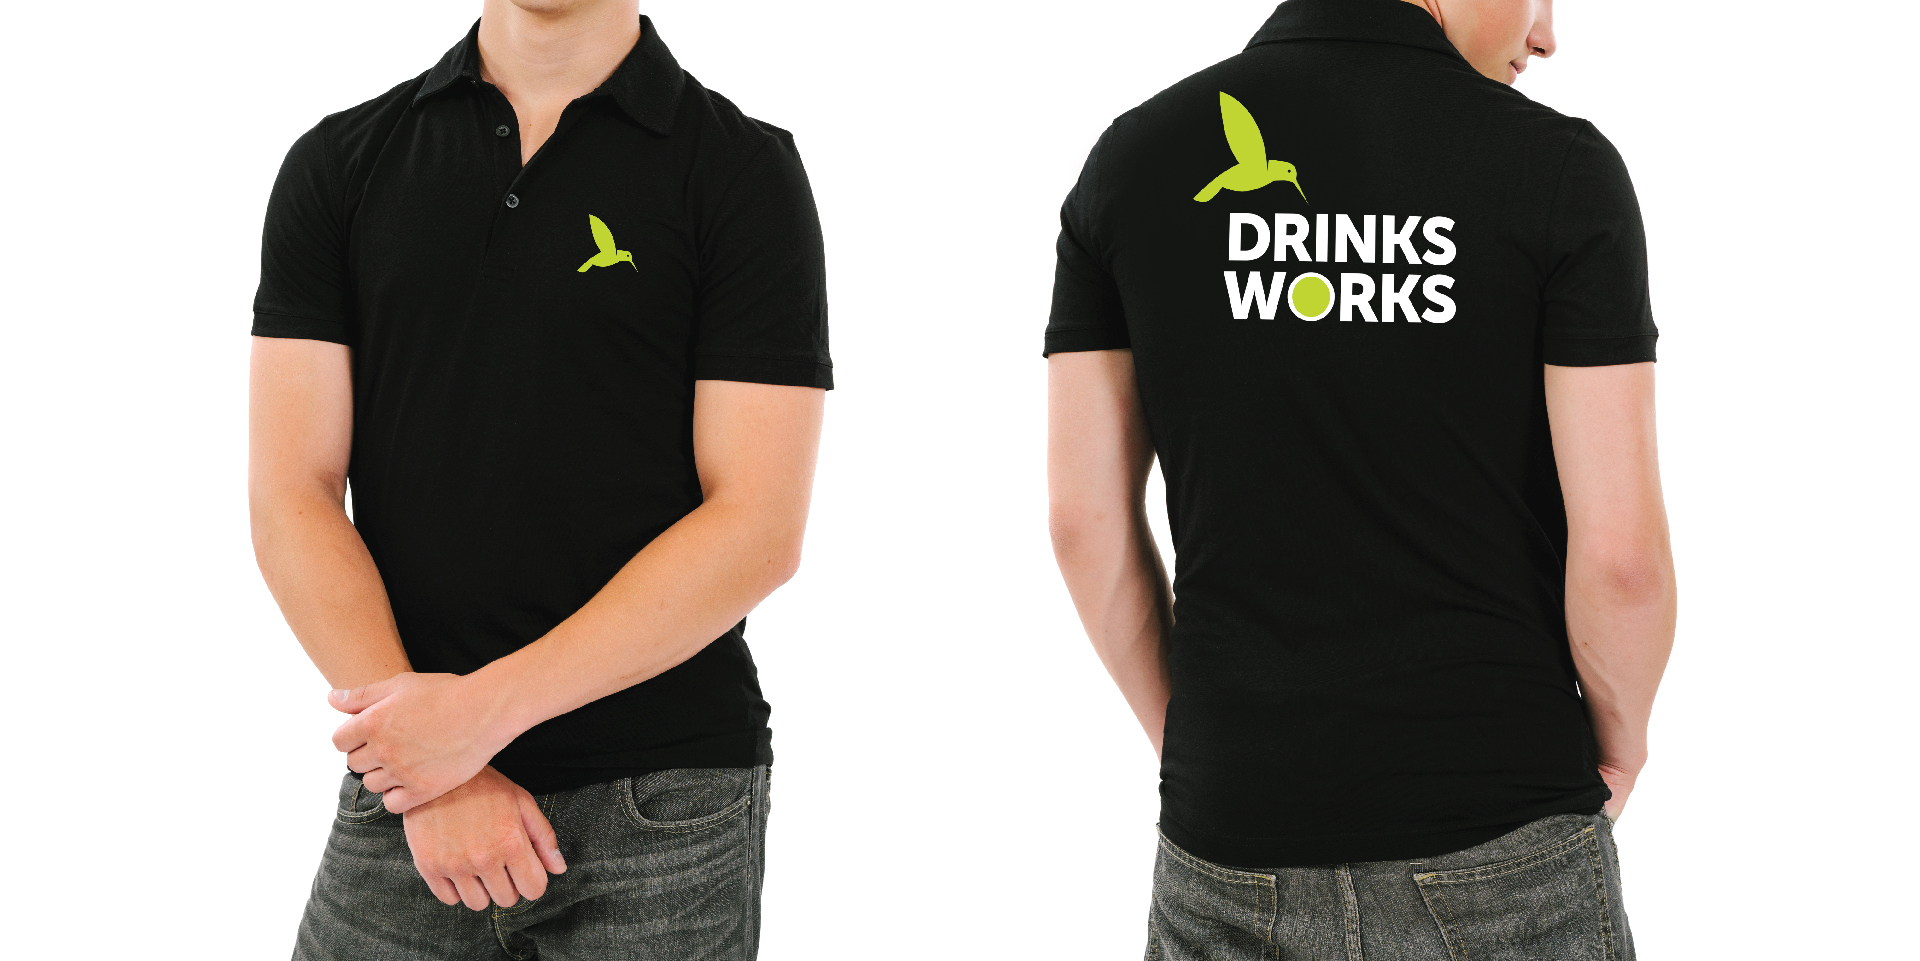 Drinksworks branded clothing design